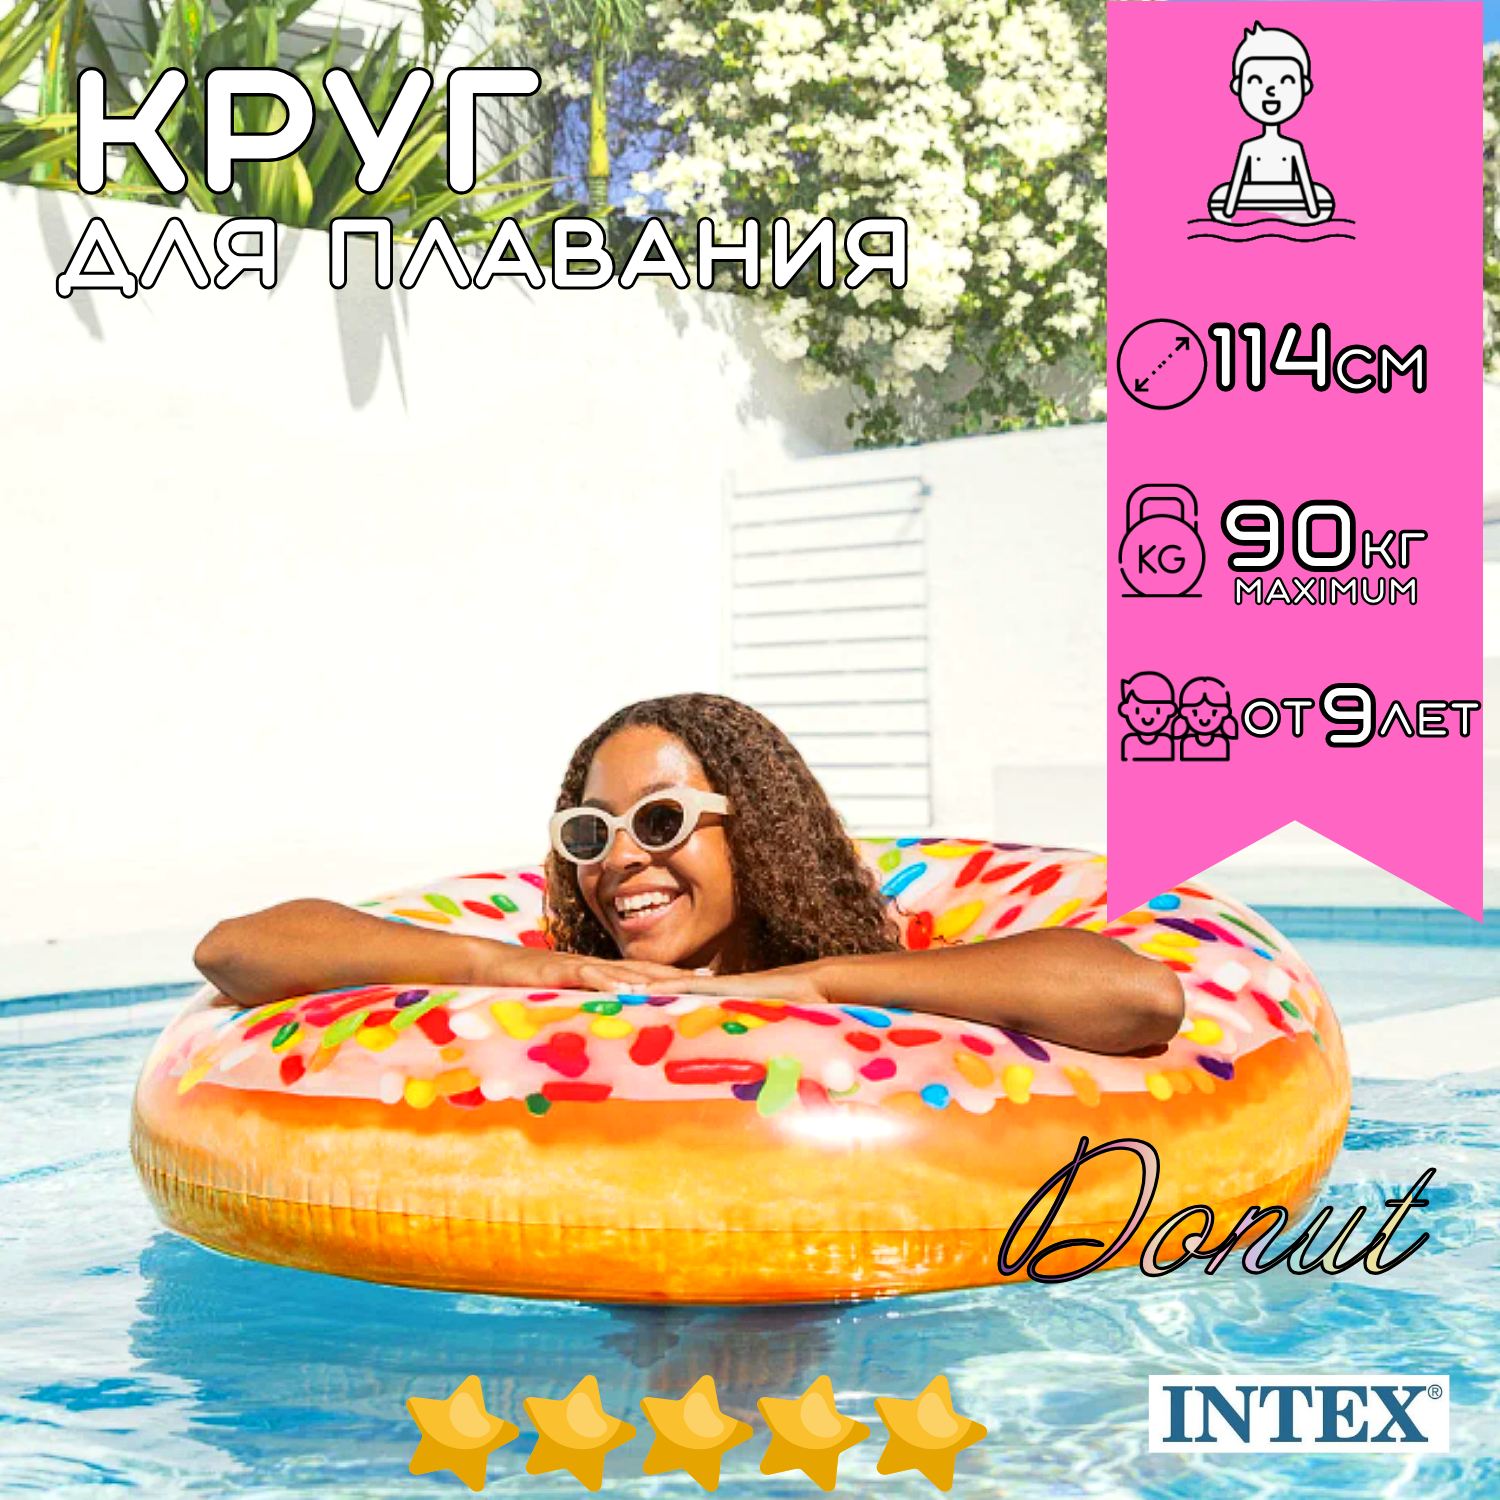 Надувной круг для плавания INTEX Donut 114 см, для взрослых и детей c 9 лет на пляж и в бассейн, нагрузка до 90 кг, плотный с рисунком не прозрачный, без насоса / 1 шт